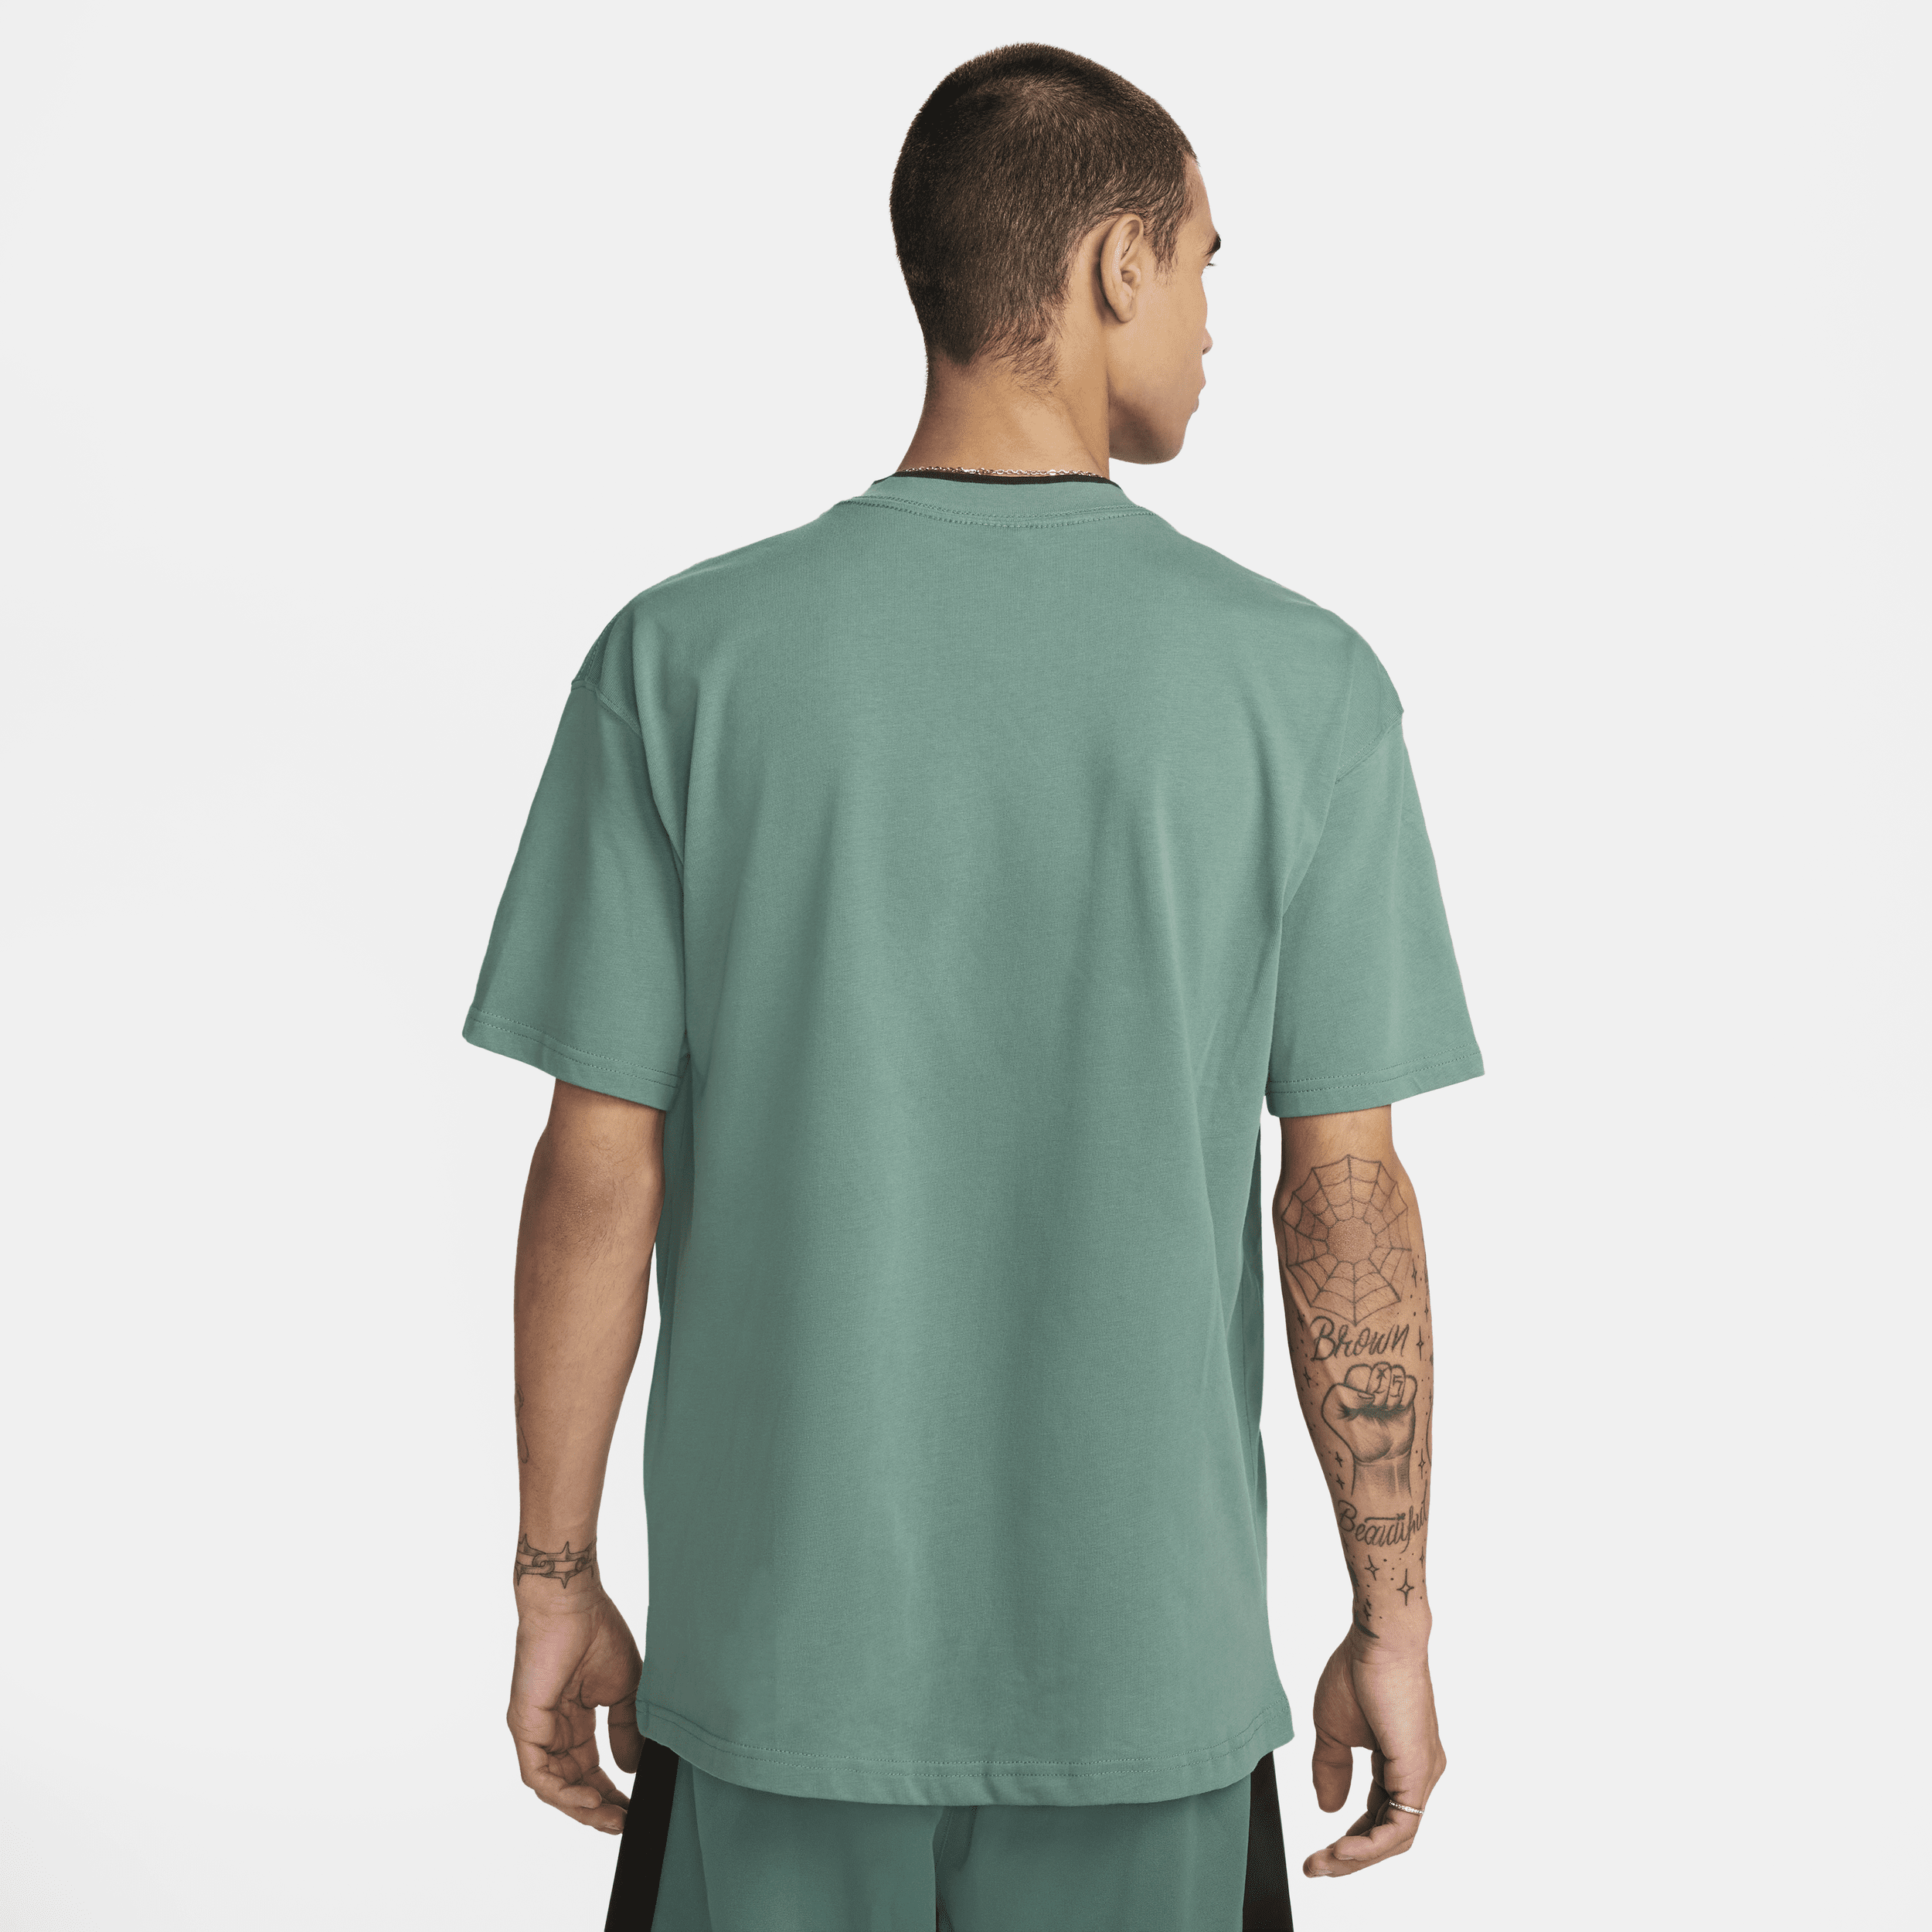 Nike Air T-shirt voor heren Groen